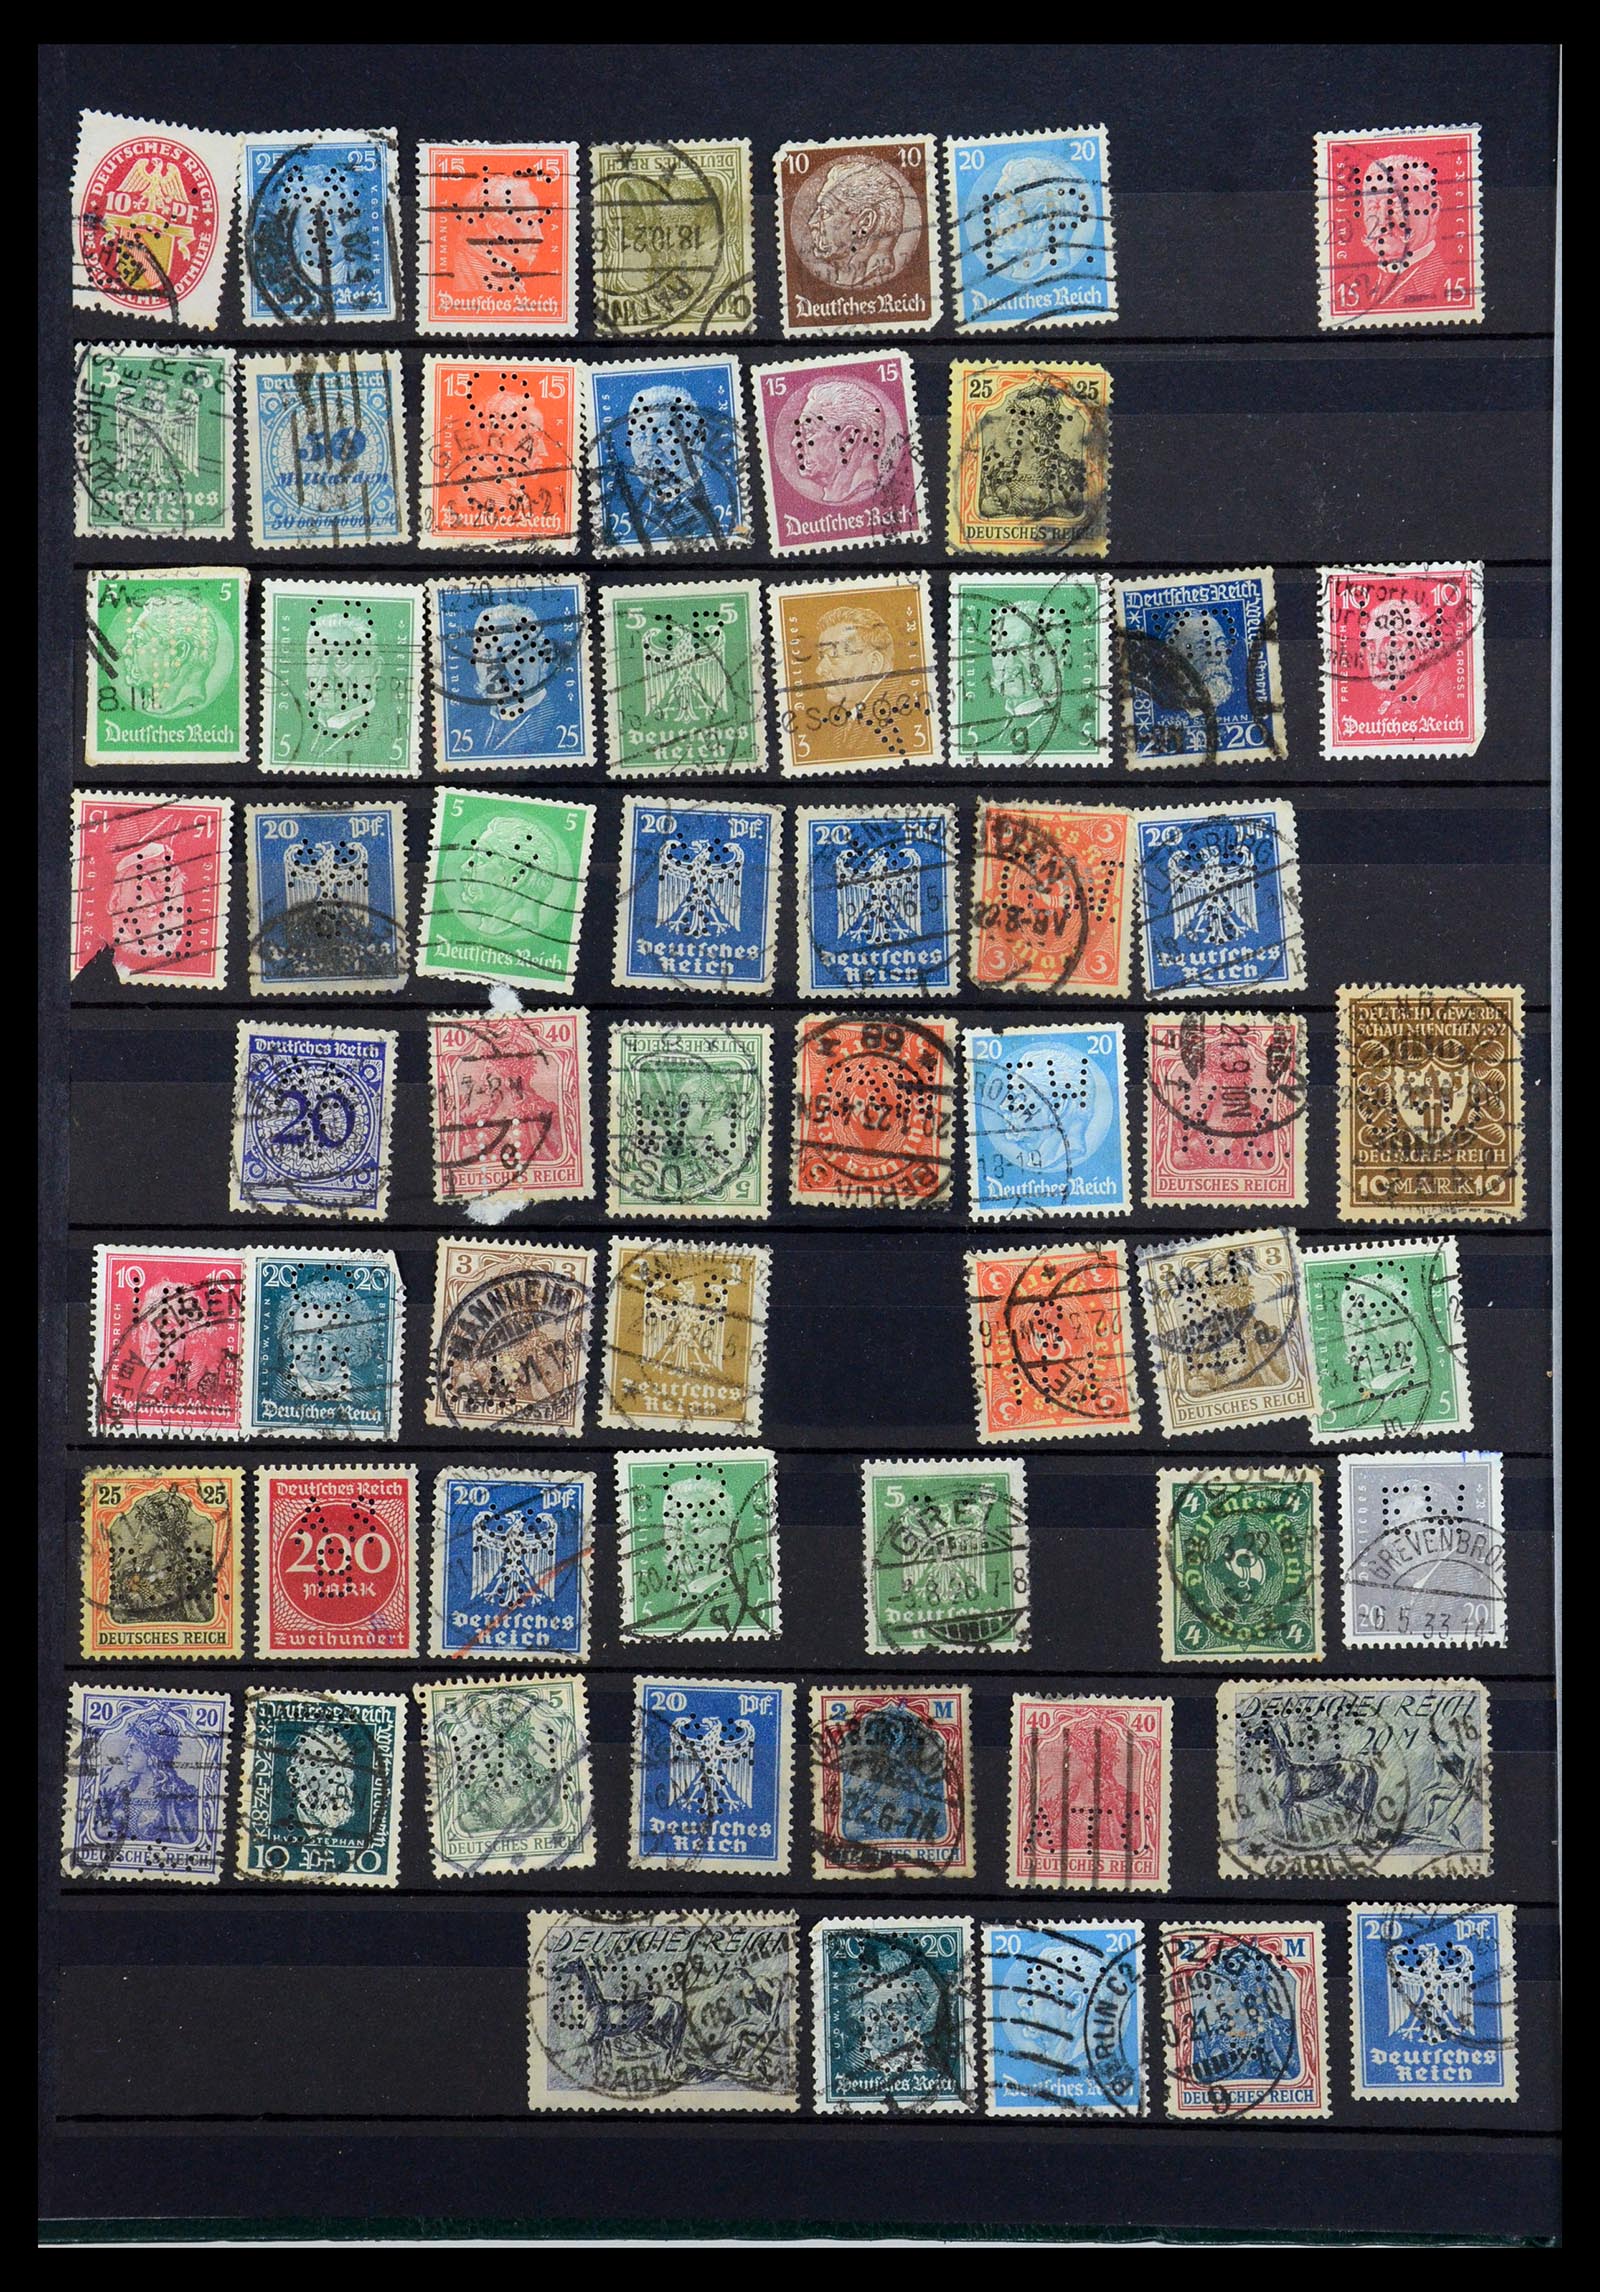 35183 006 - Stamp Collection 35183 German Reich perfins 1880-1945.